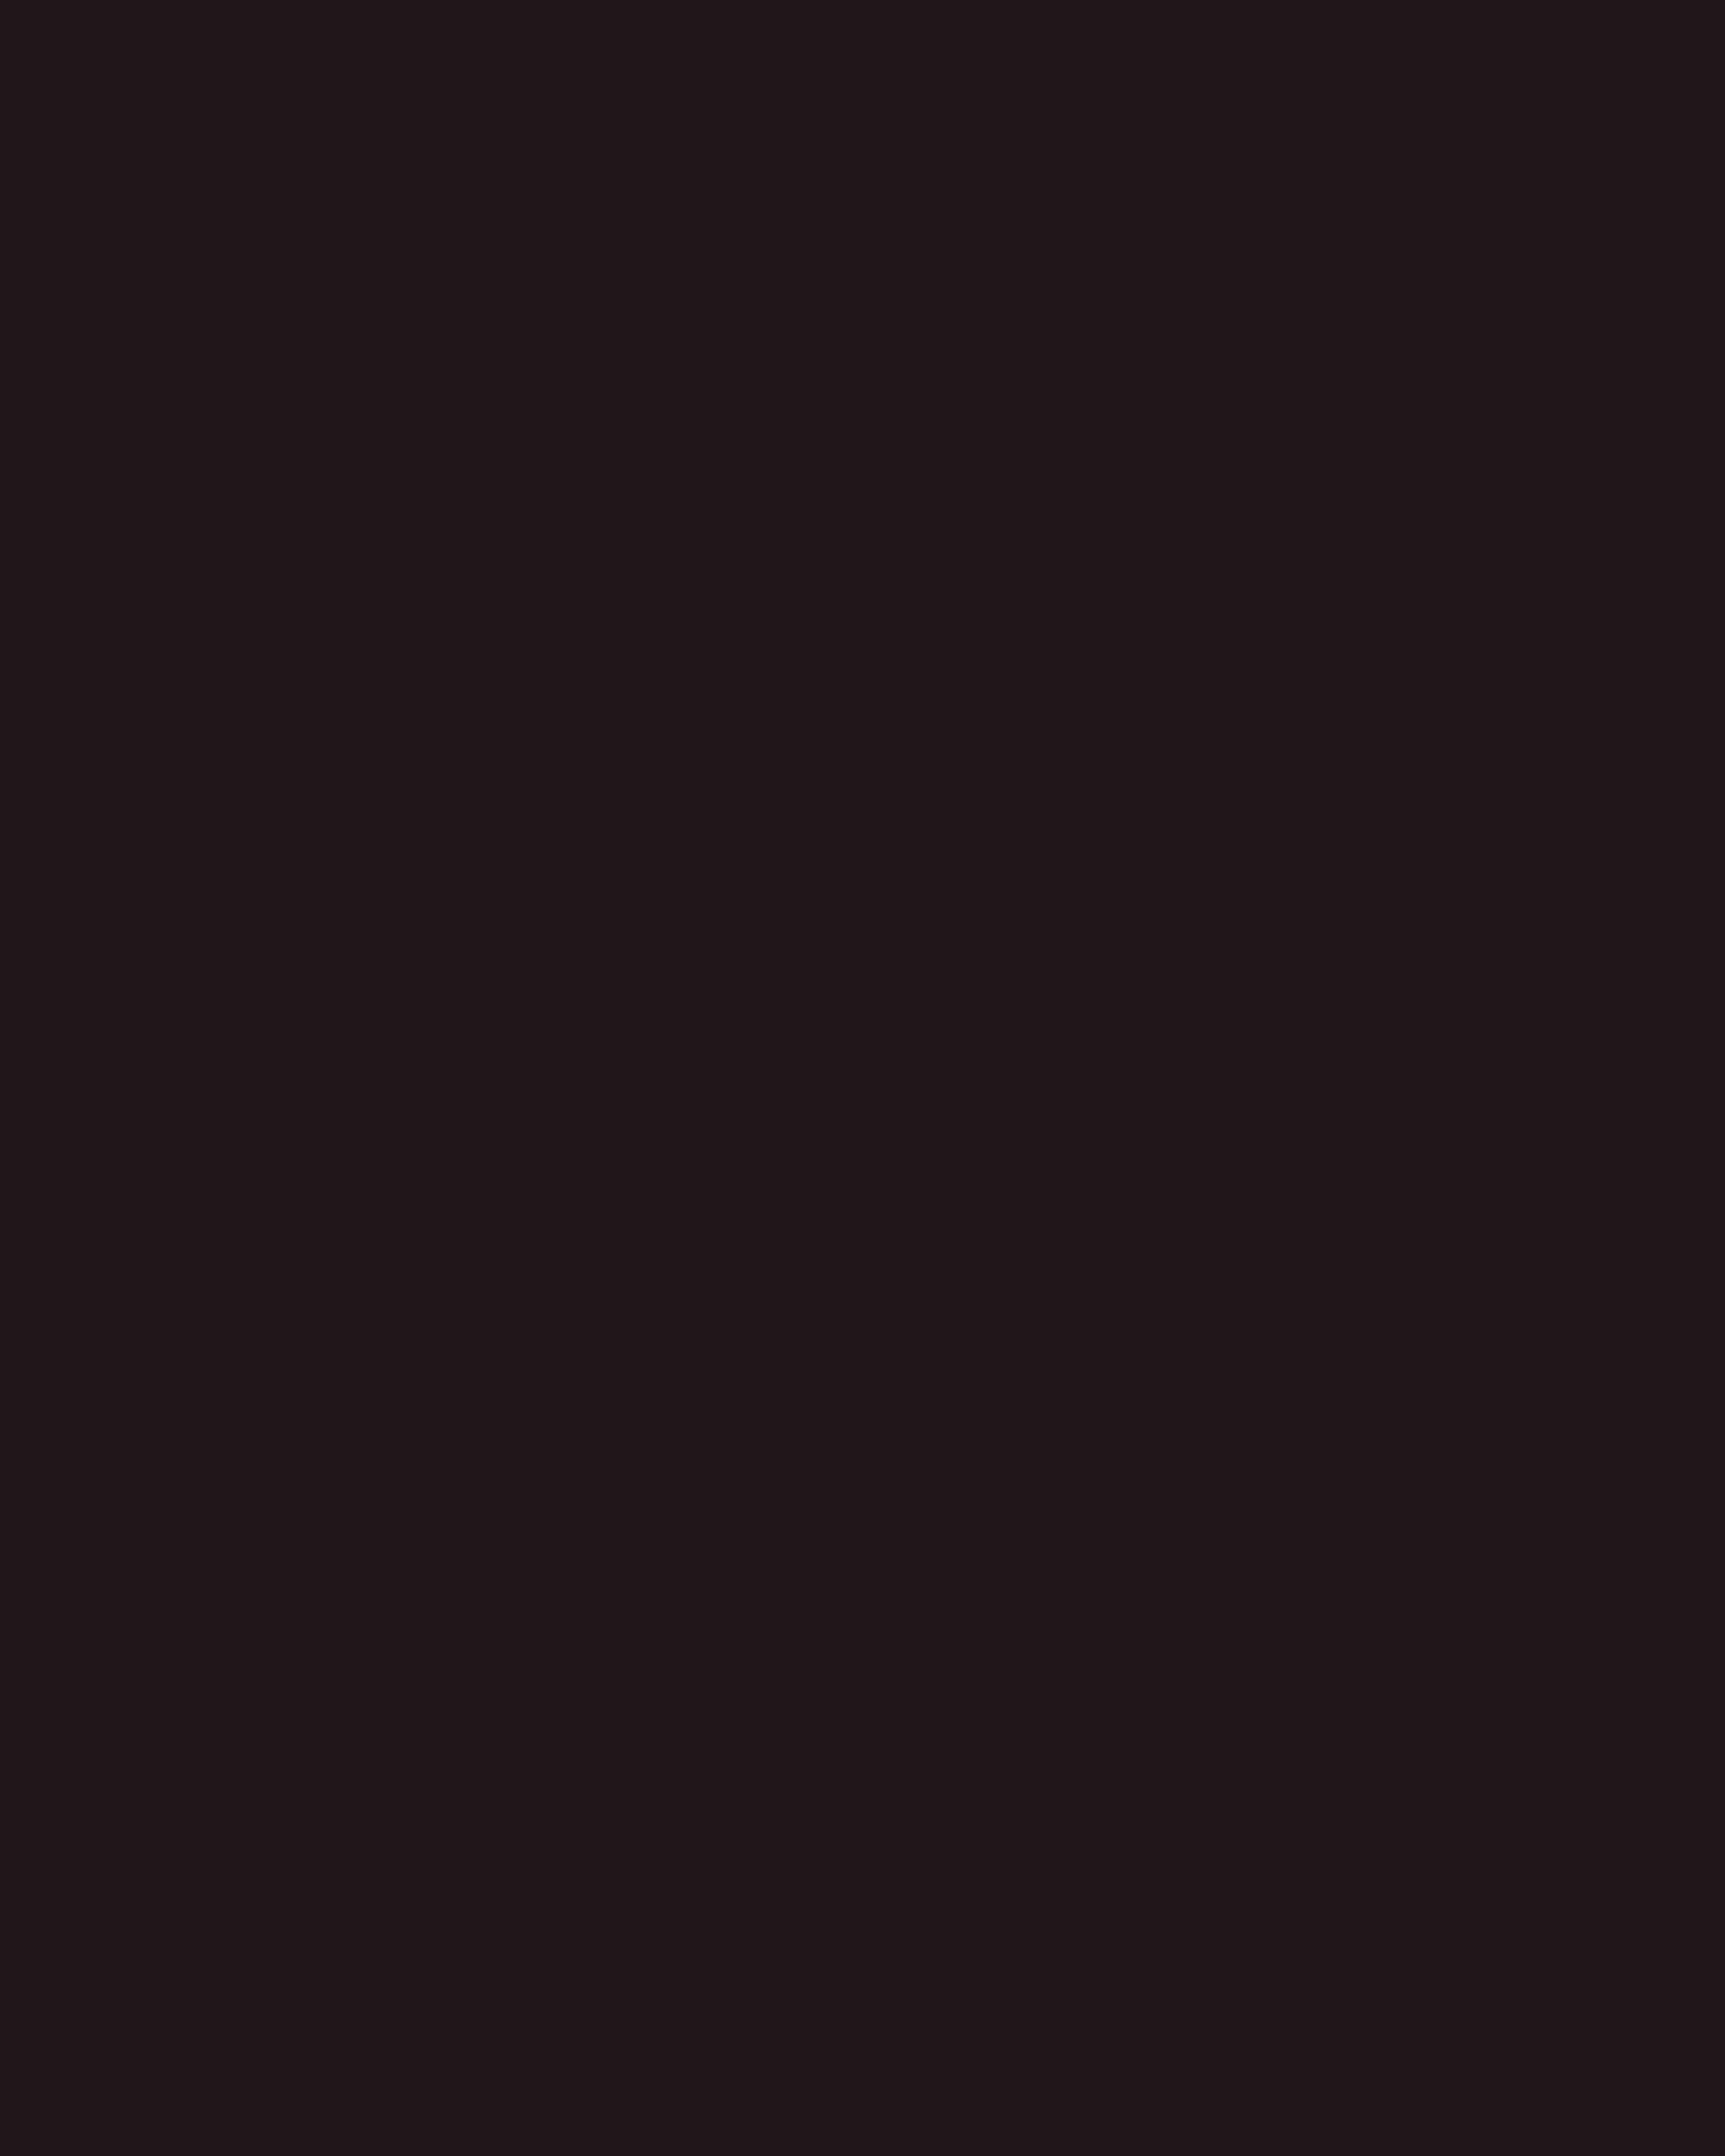 Андрей Кончаловский на предпремьерном показе своего спектакля «Три сестры». Государственный академический театр им. Моссовета, Москва, 2012 год. Фотография: Валерий Шарифулин / ИТАР-ТАСС